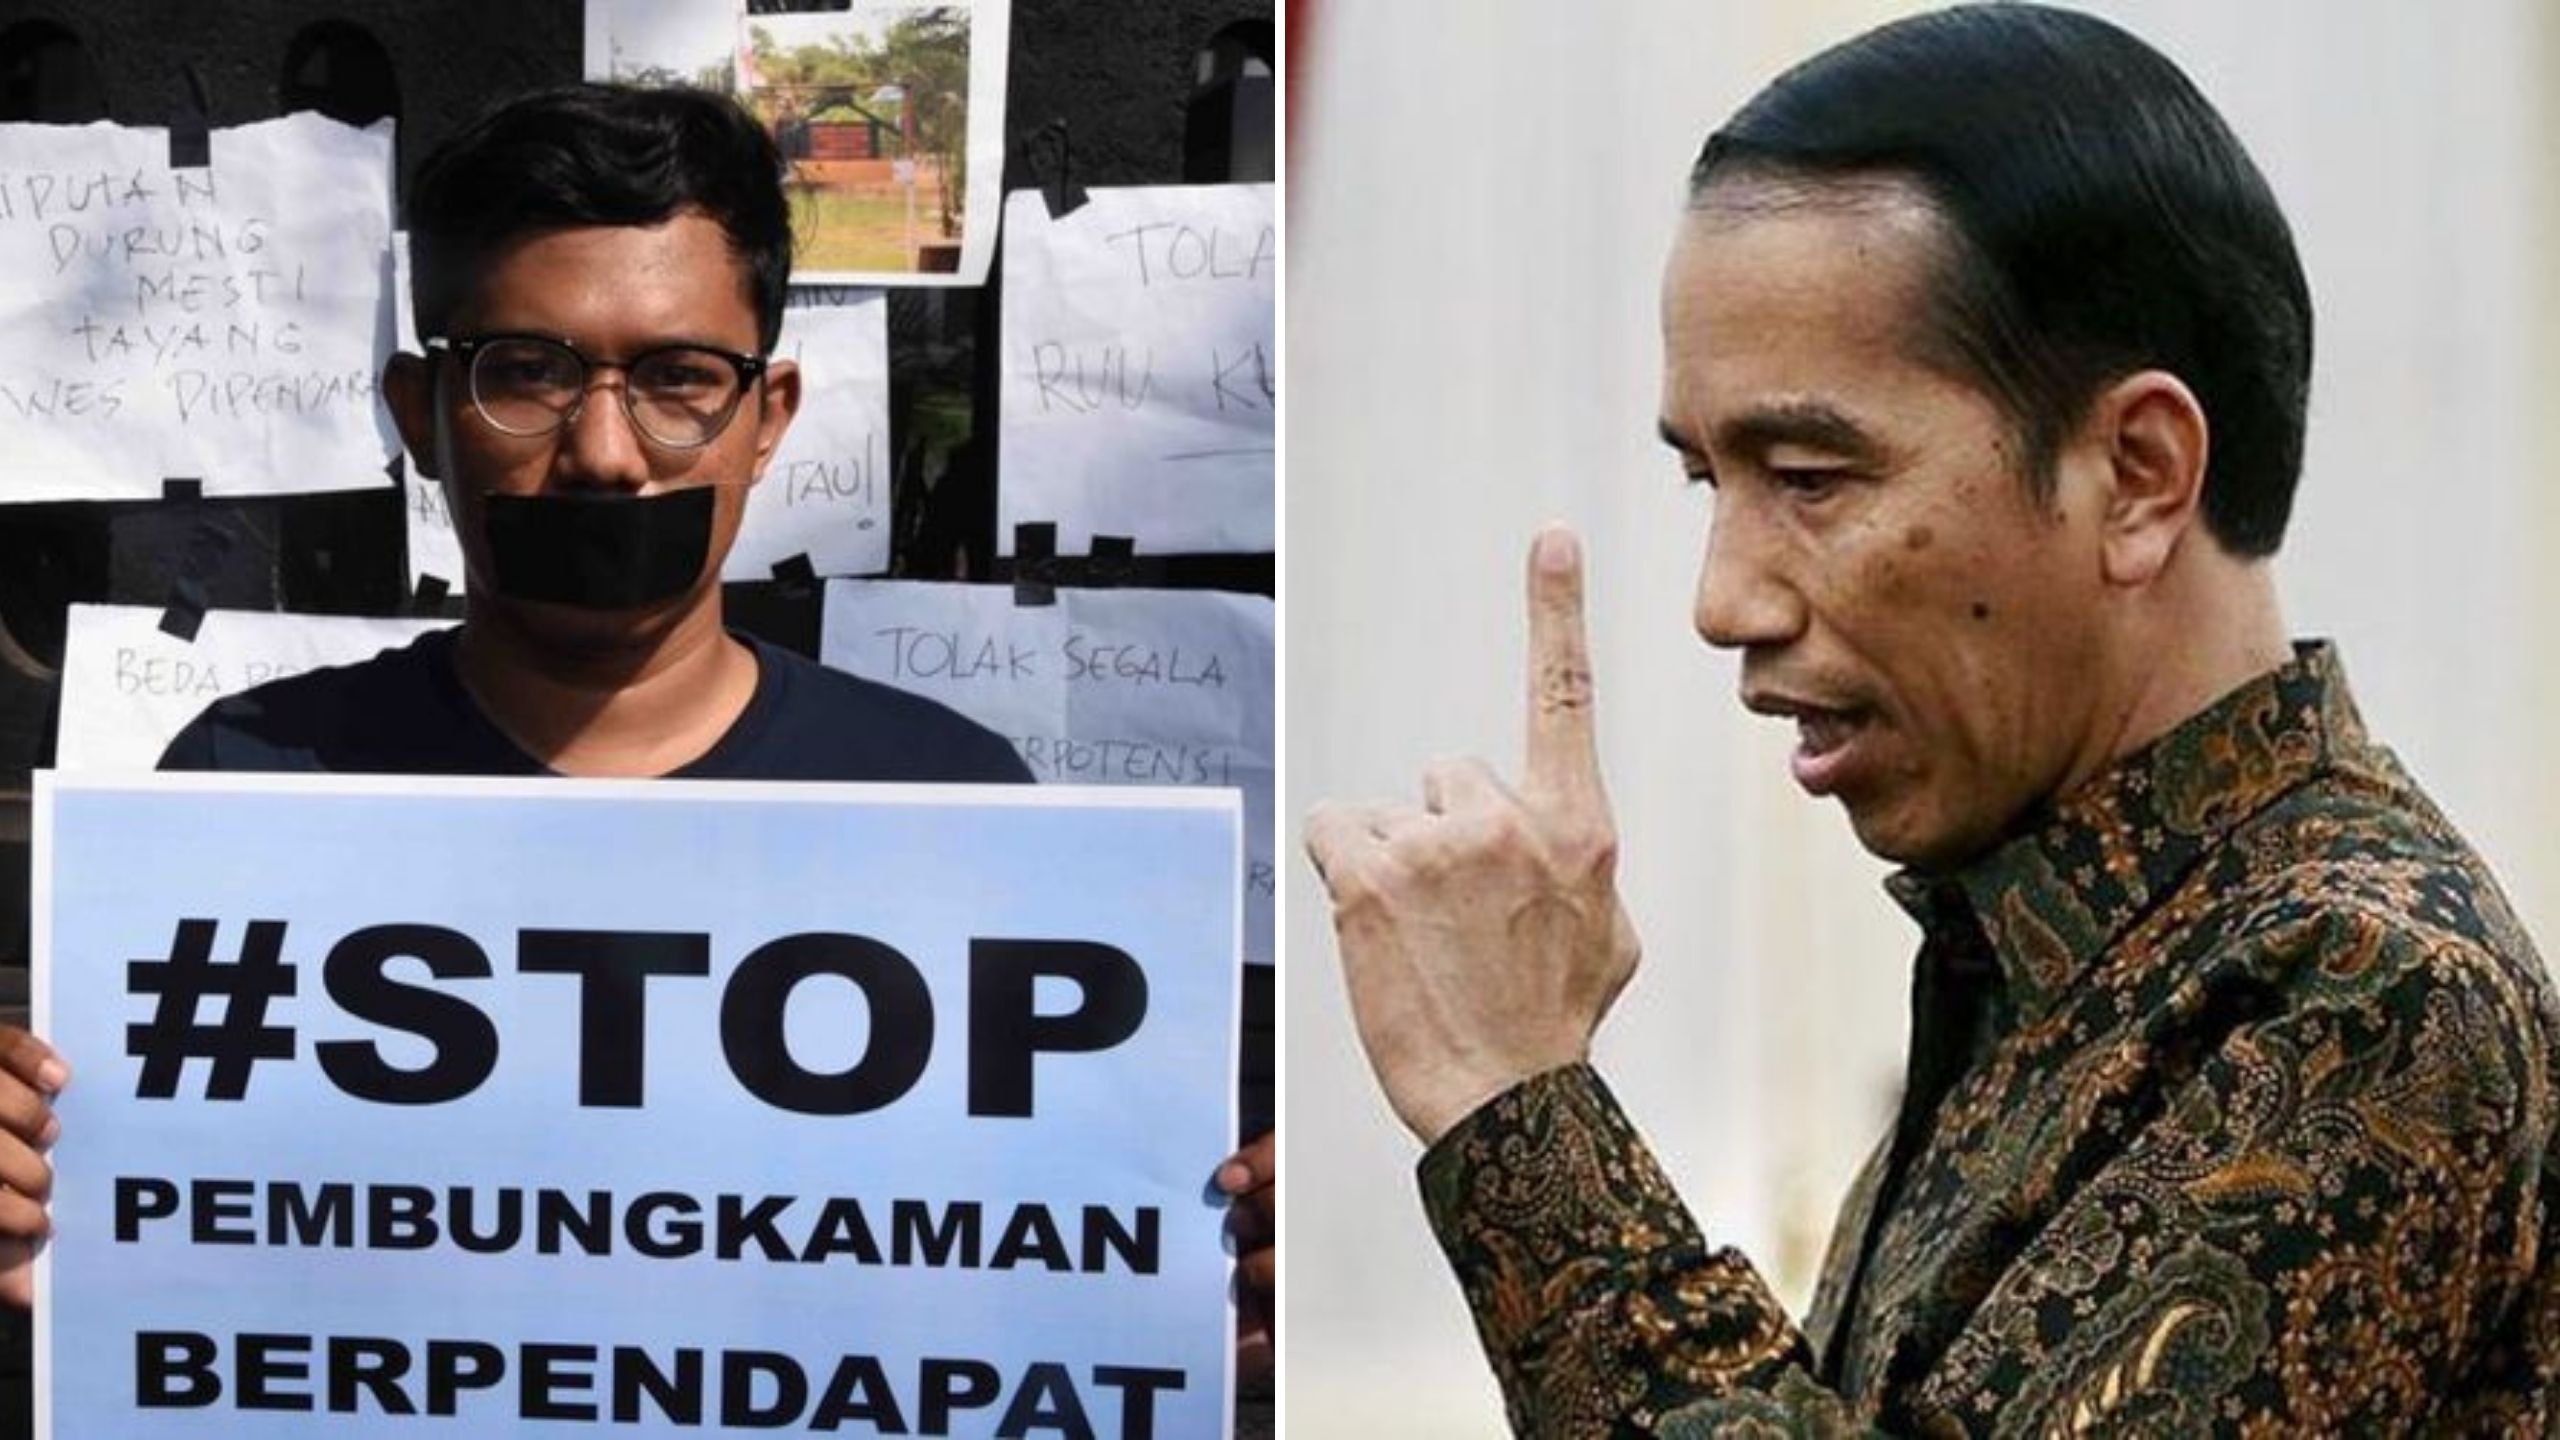 Survei Indikator Politik Indonesia: 62,9 Persen Rakyat Semakin Takut Berpendapat di Era Rezim Jokowi!